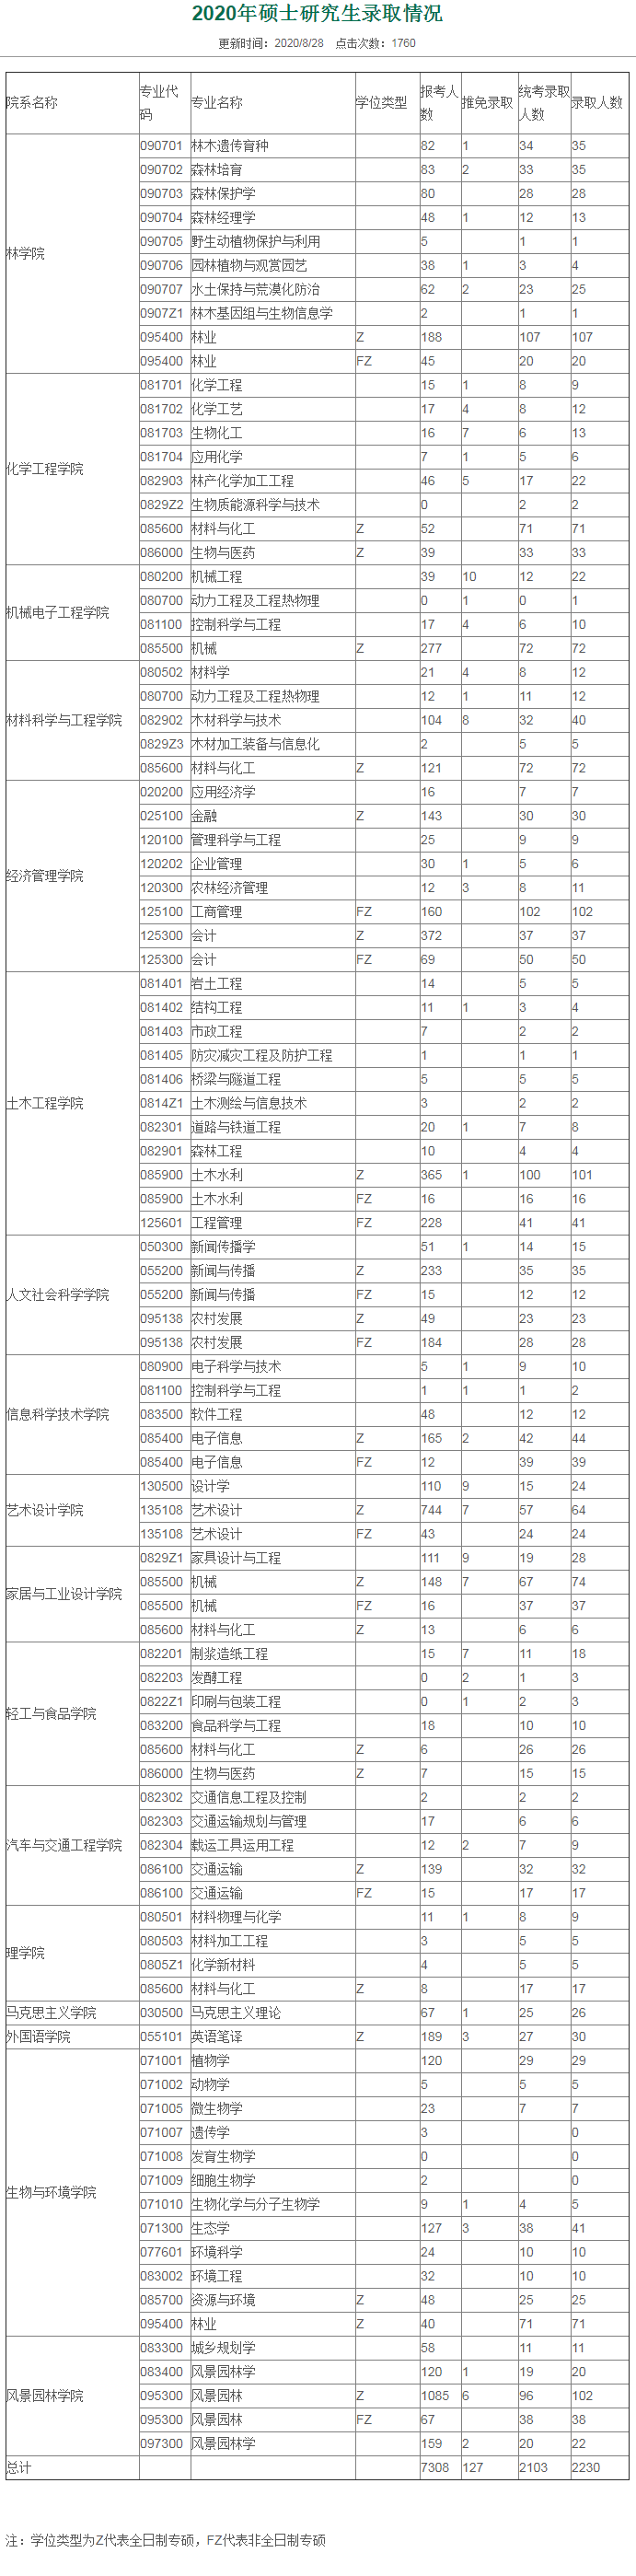 南京林业大学2020年硕士研究生报考录取比例